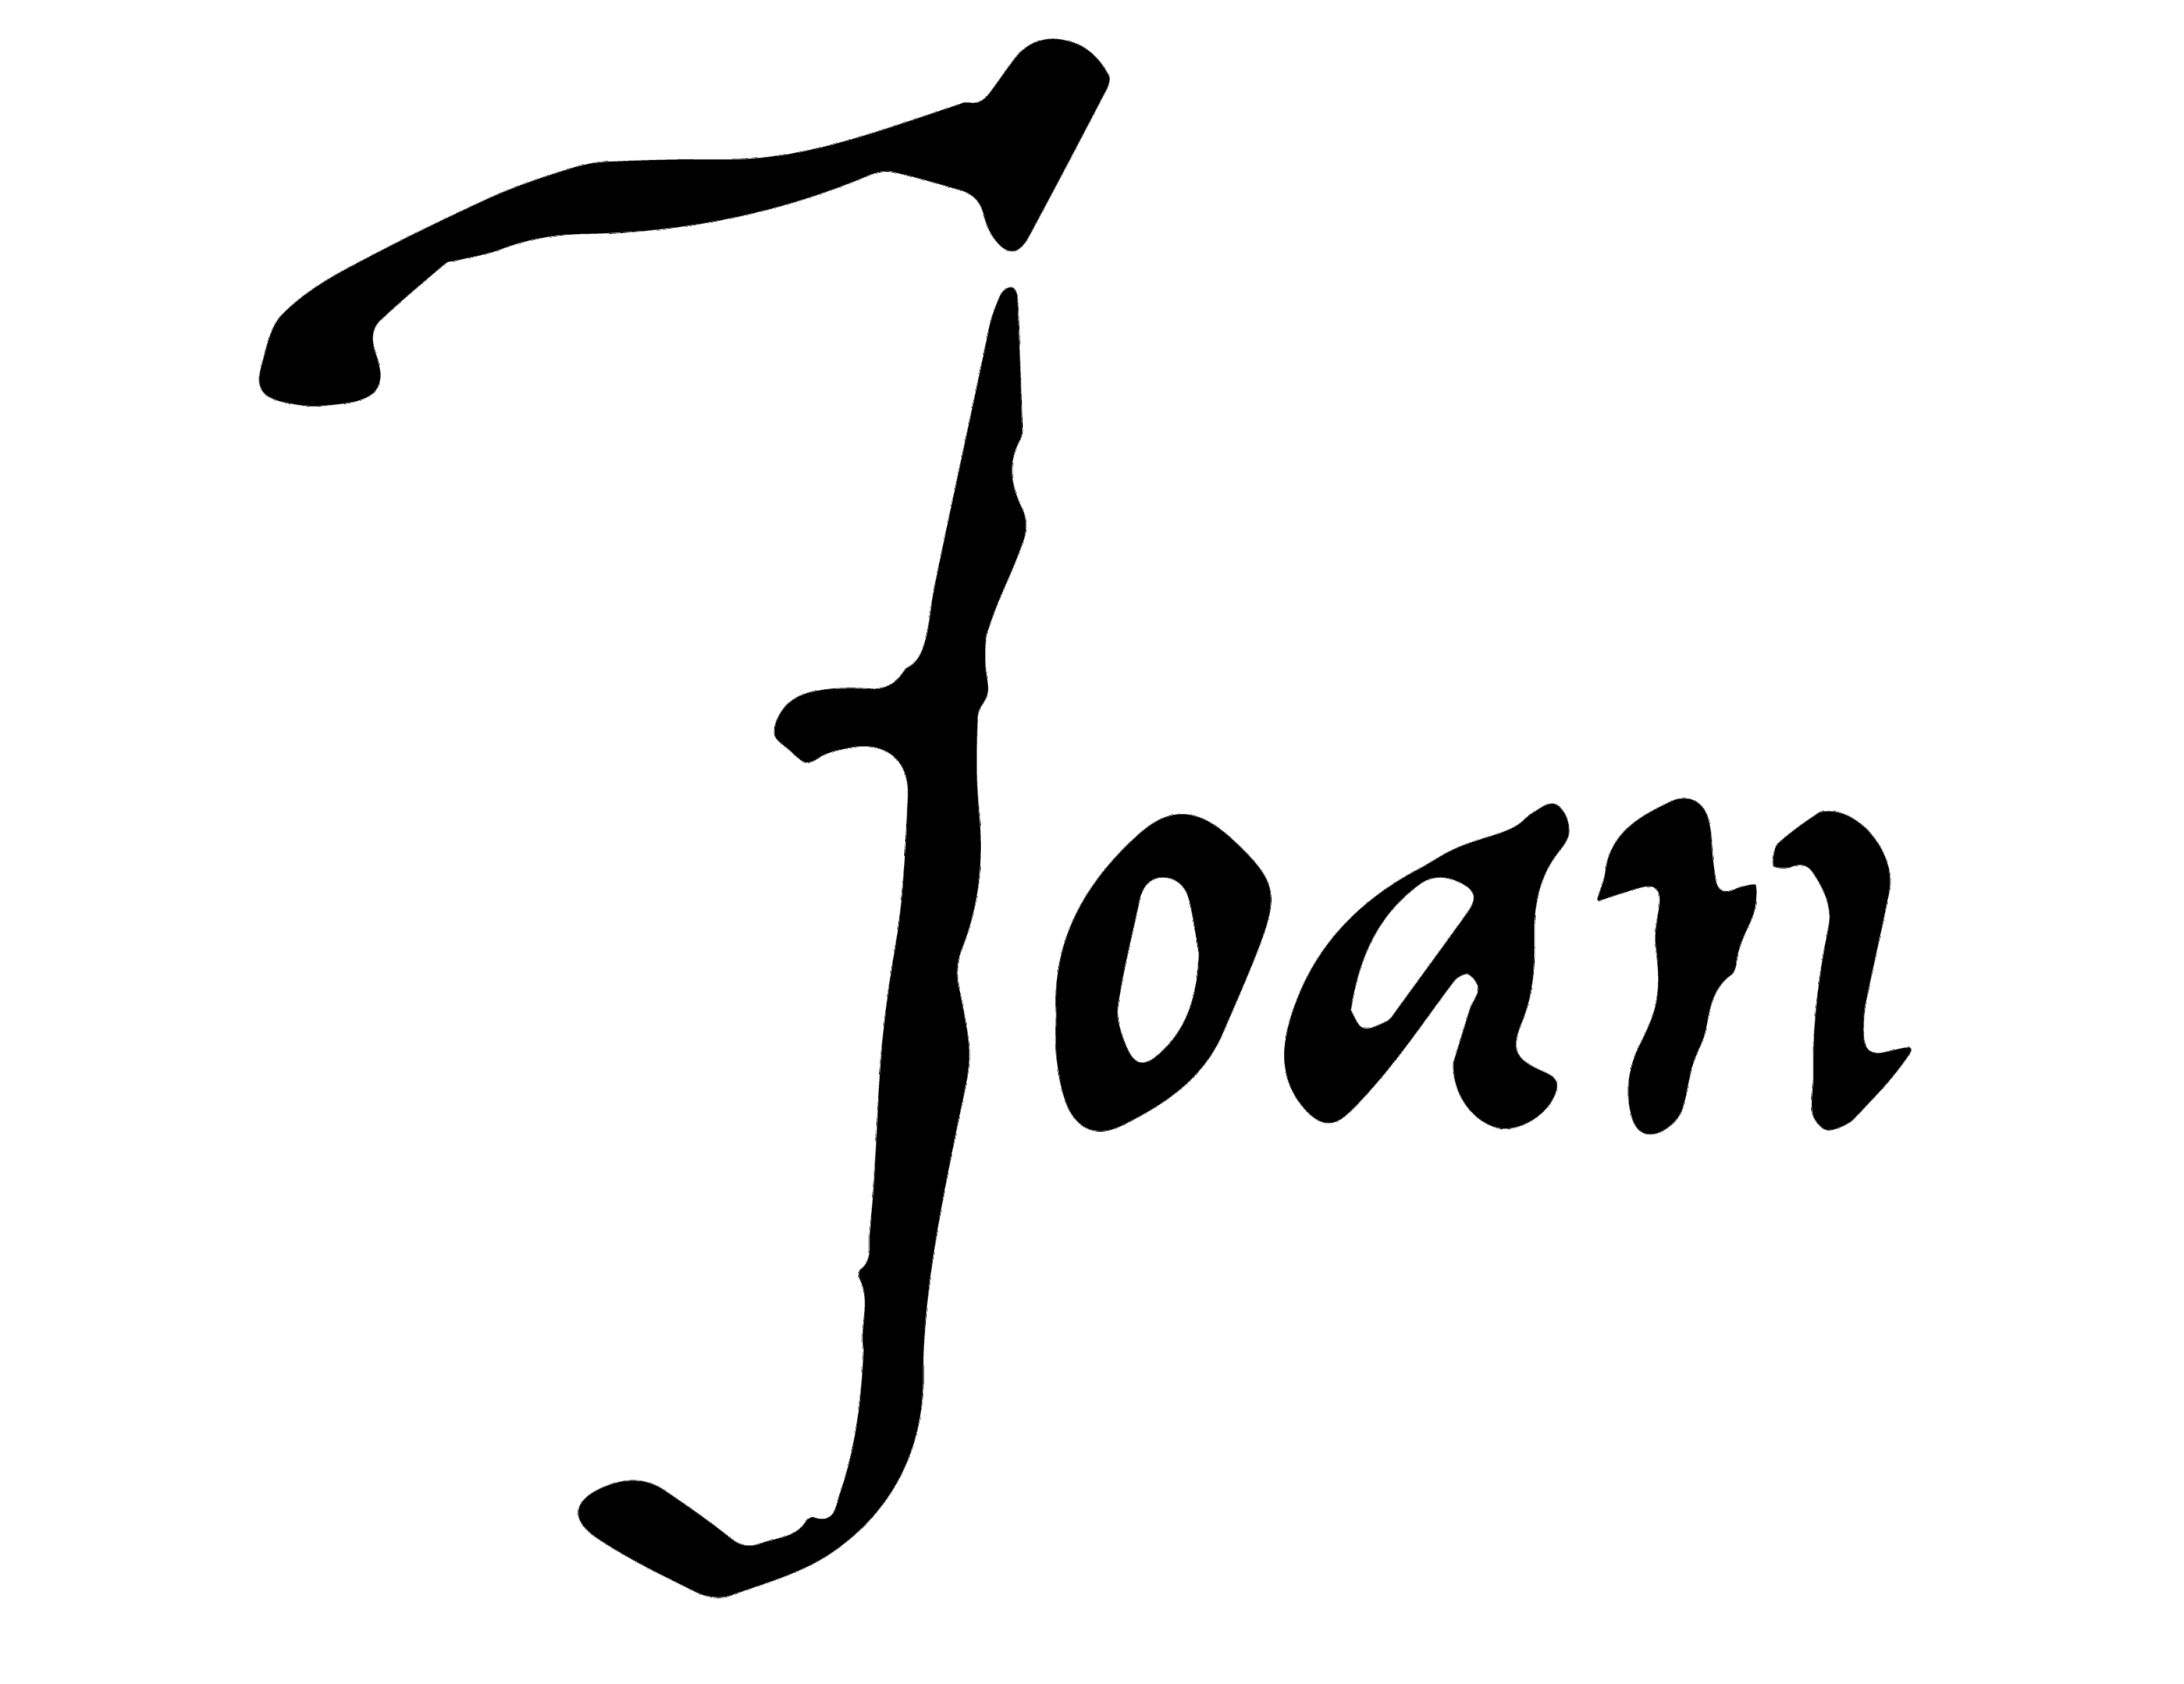 Joan Creative